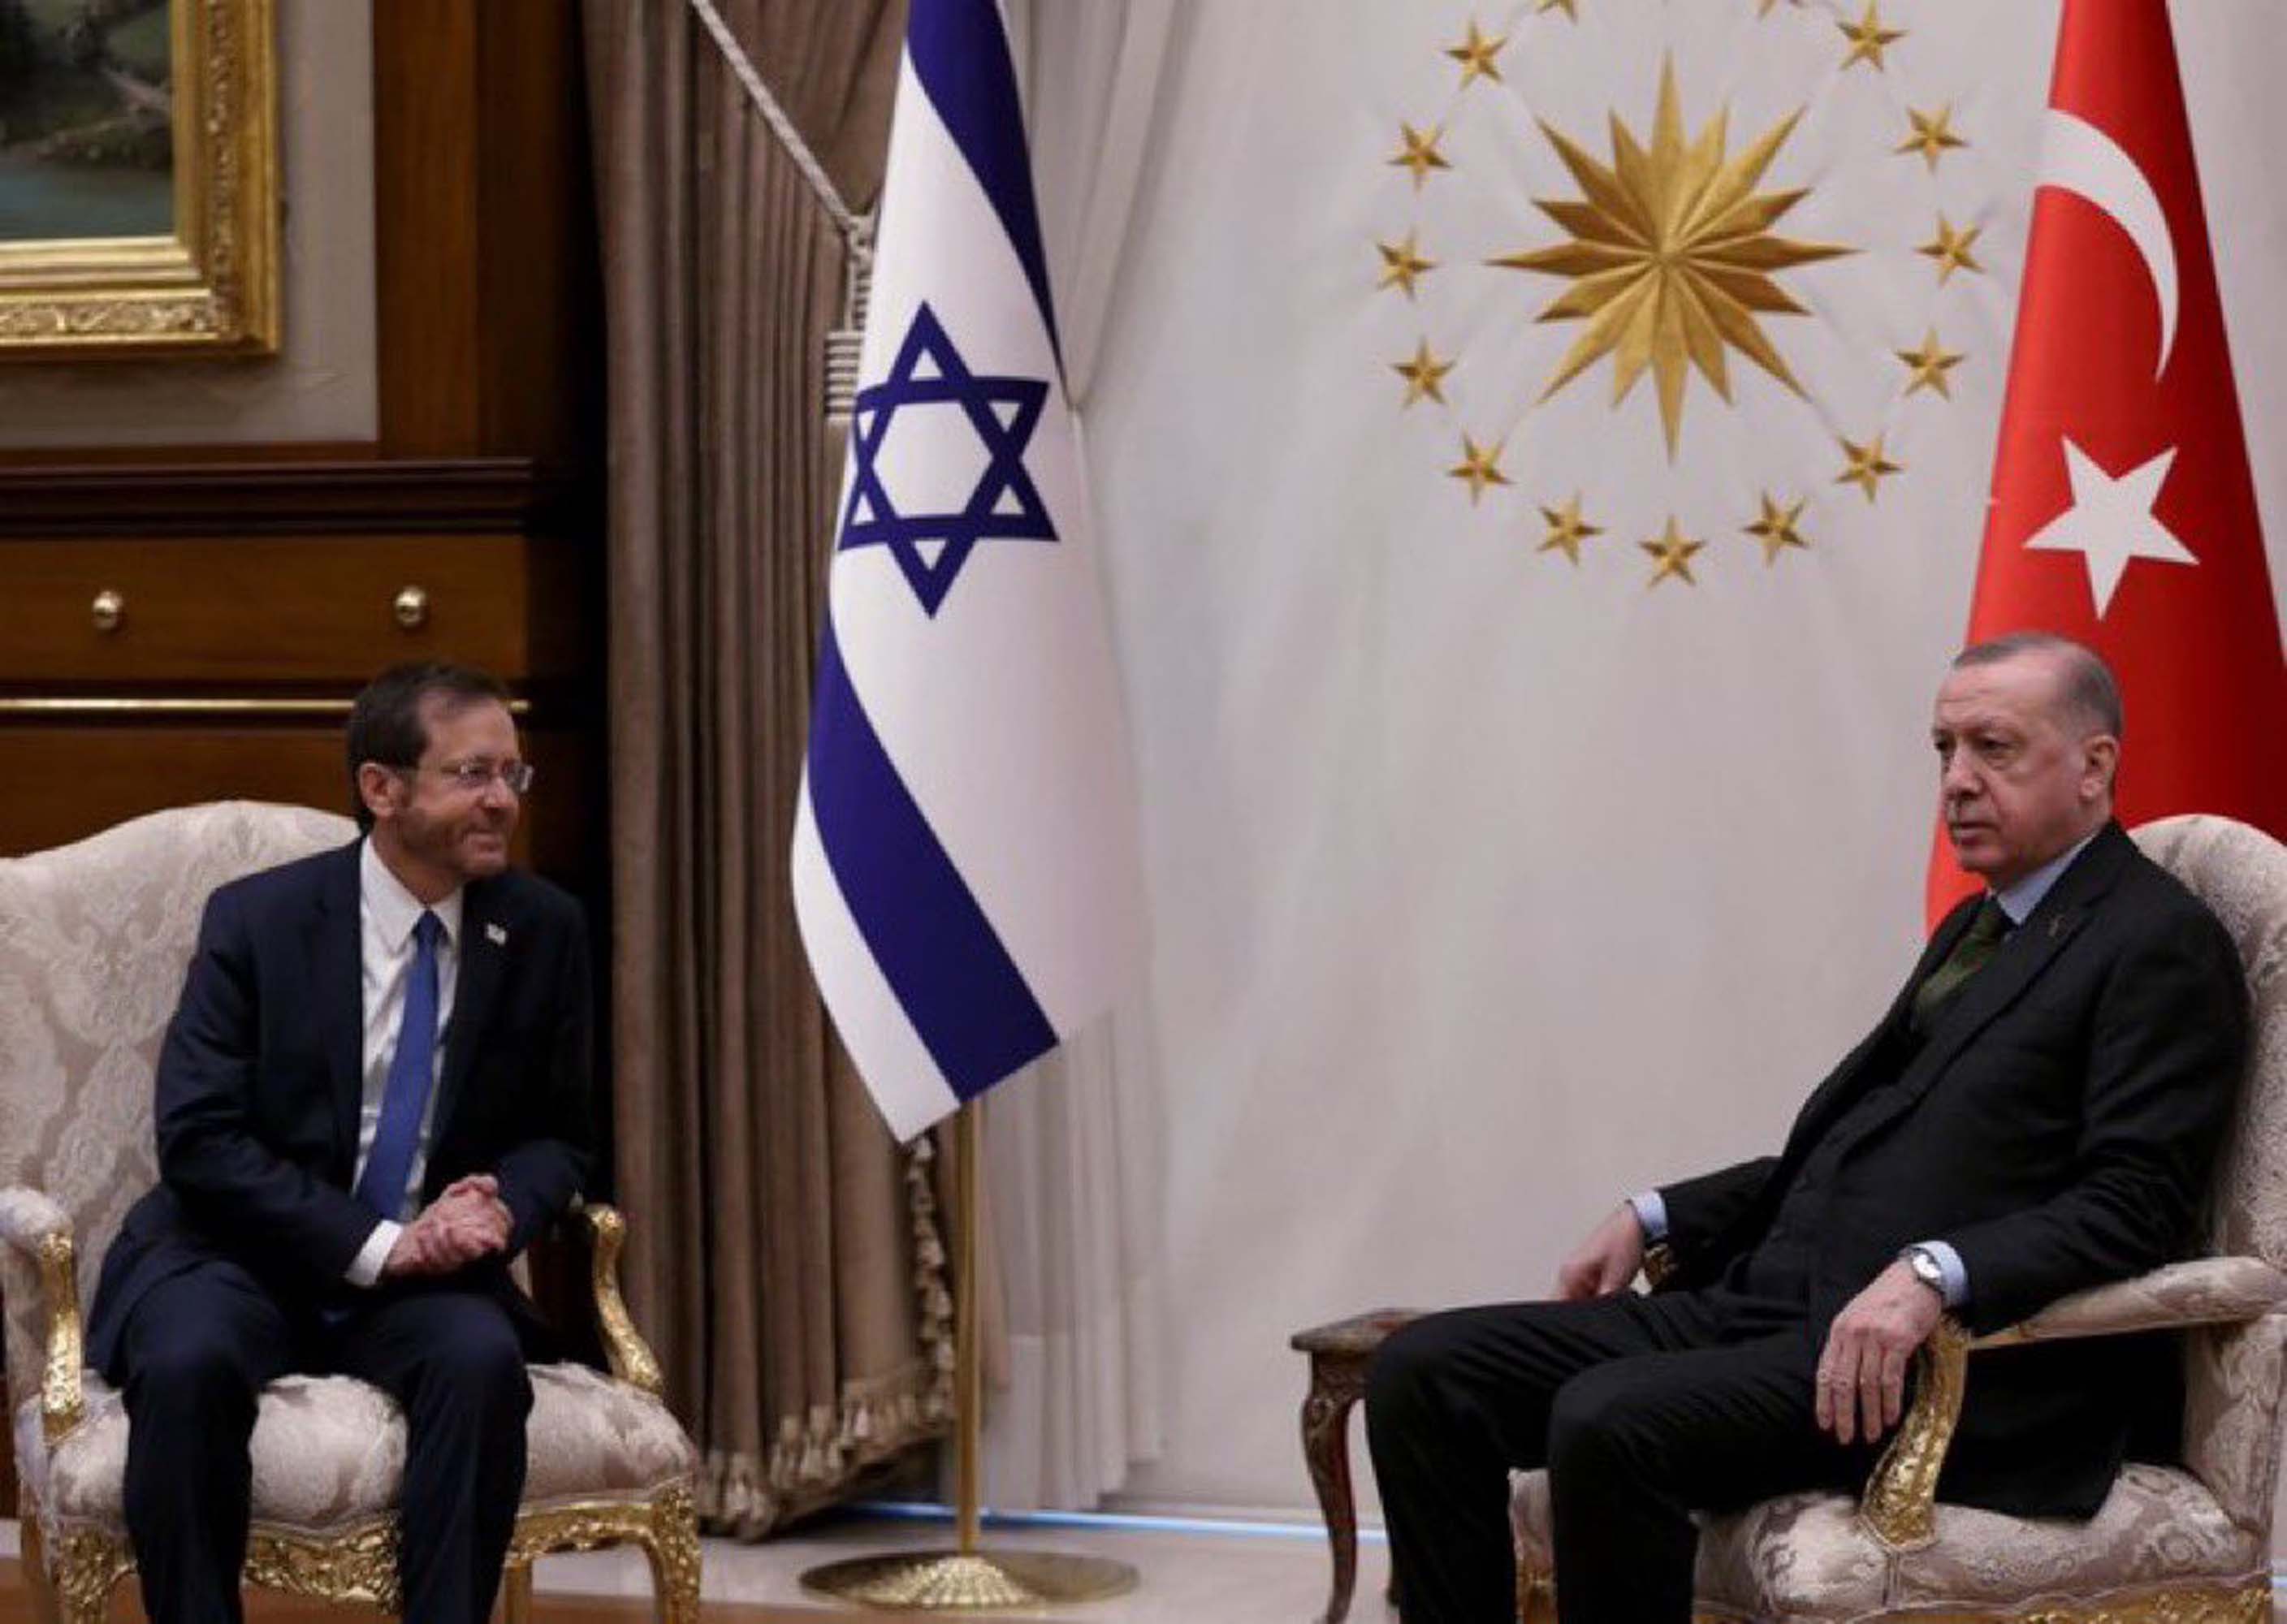 Dünya bu fotoğrafı konuşuyor! İsrail Cumhurbaşkanı Herzog, Recep Tayyip Erdoğan'ın yanında el pençe divan durdu! O kare ortalığı salladı!